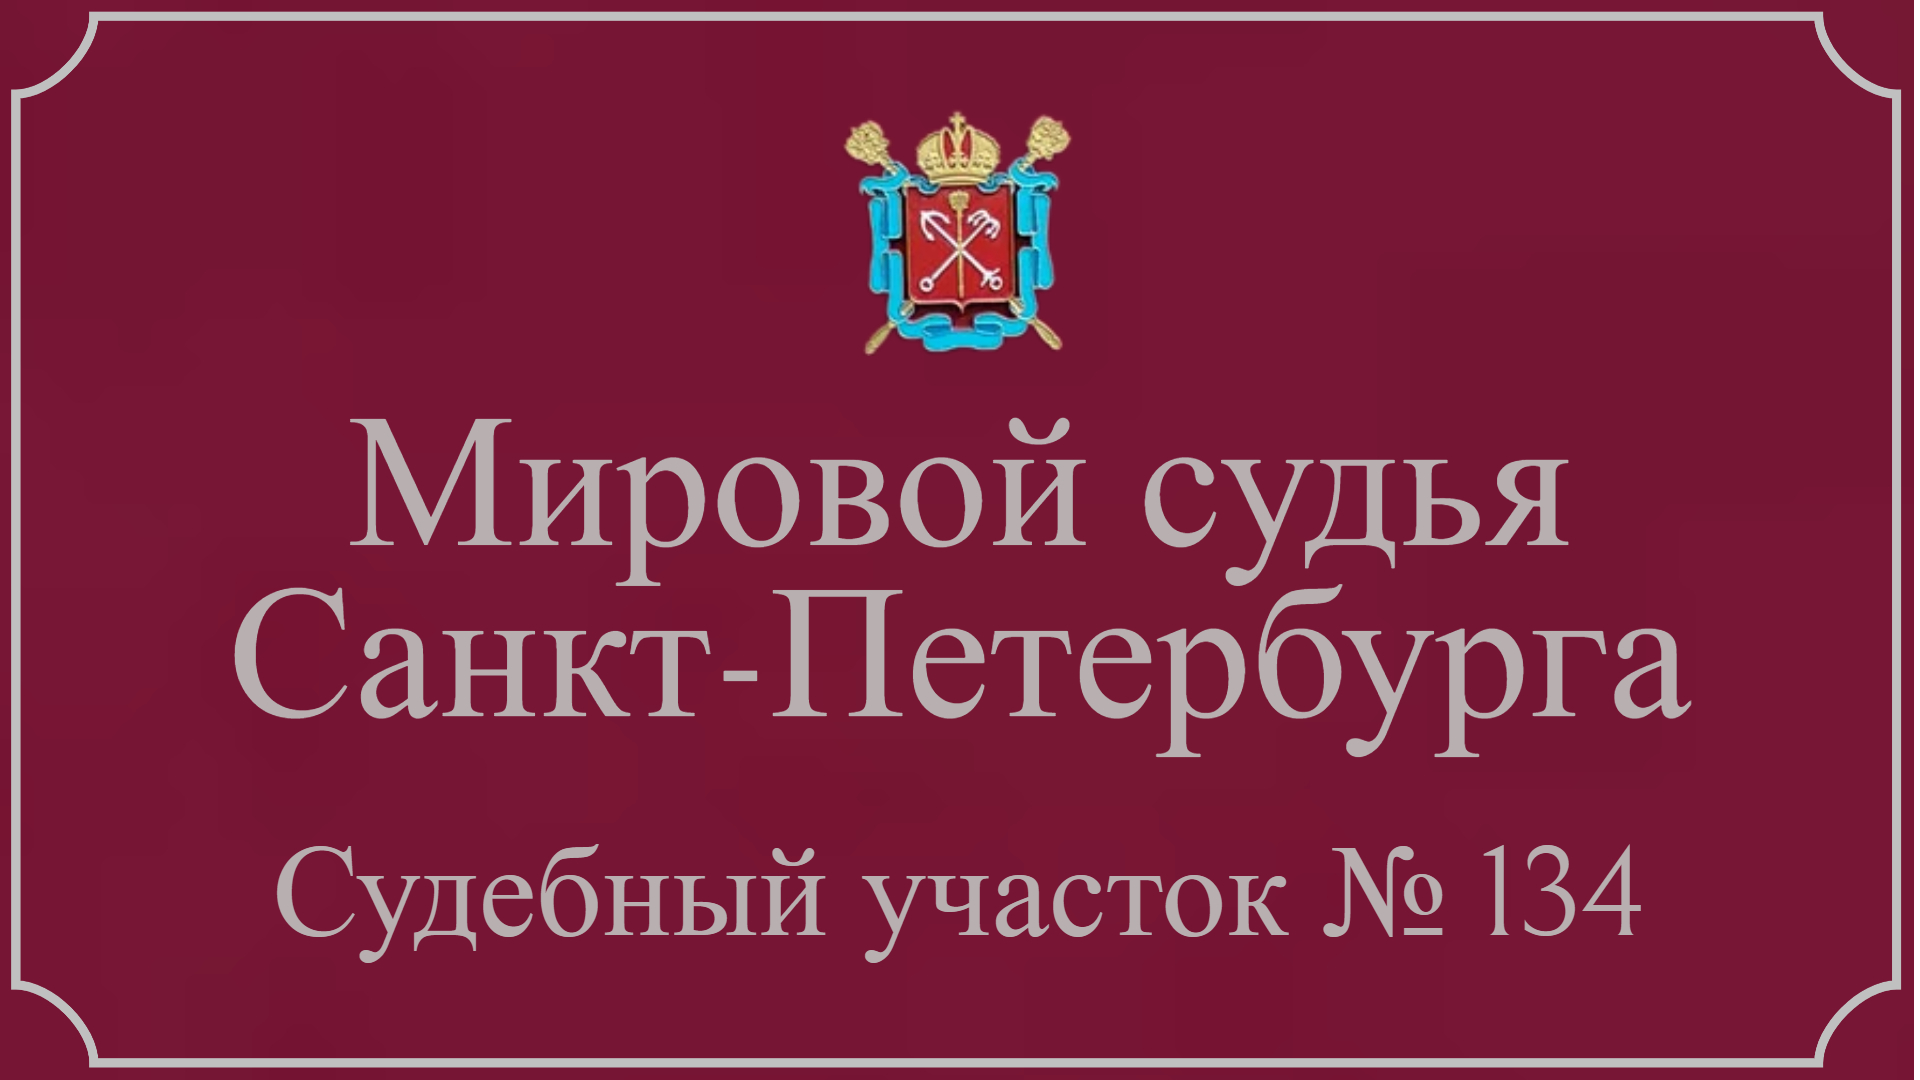 Информация по 134 судебному участку в Санкт-Петербурге.